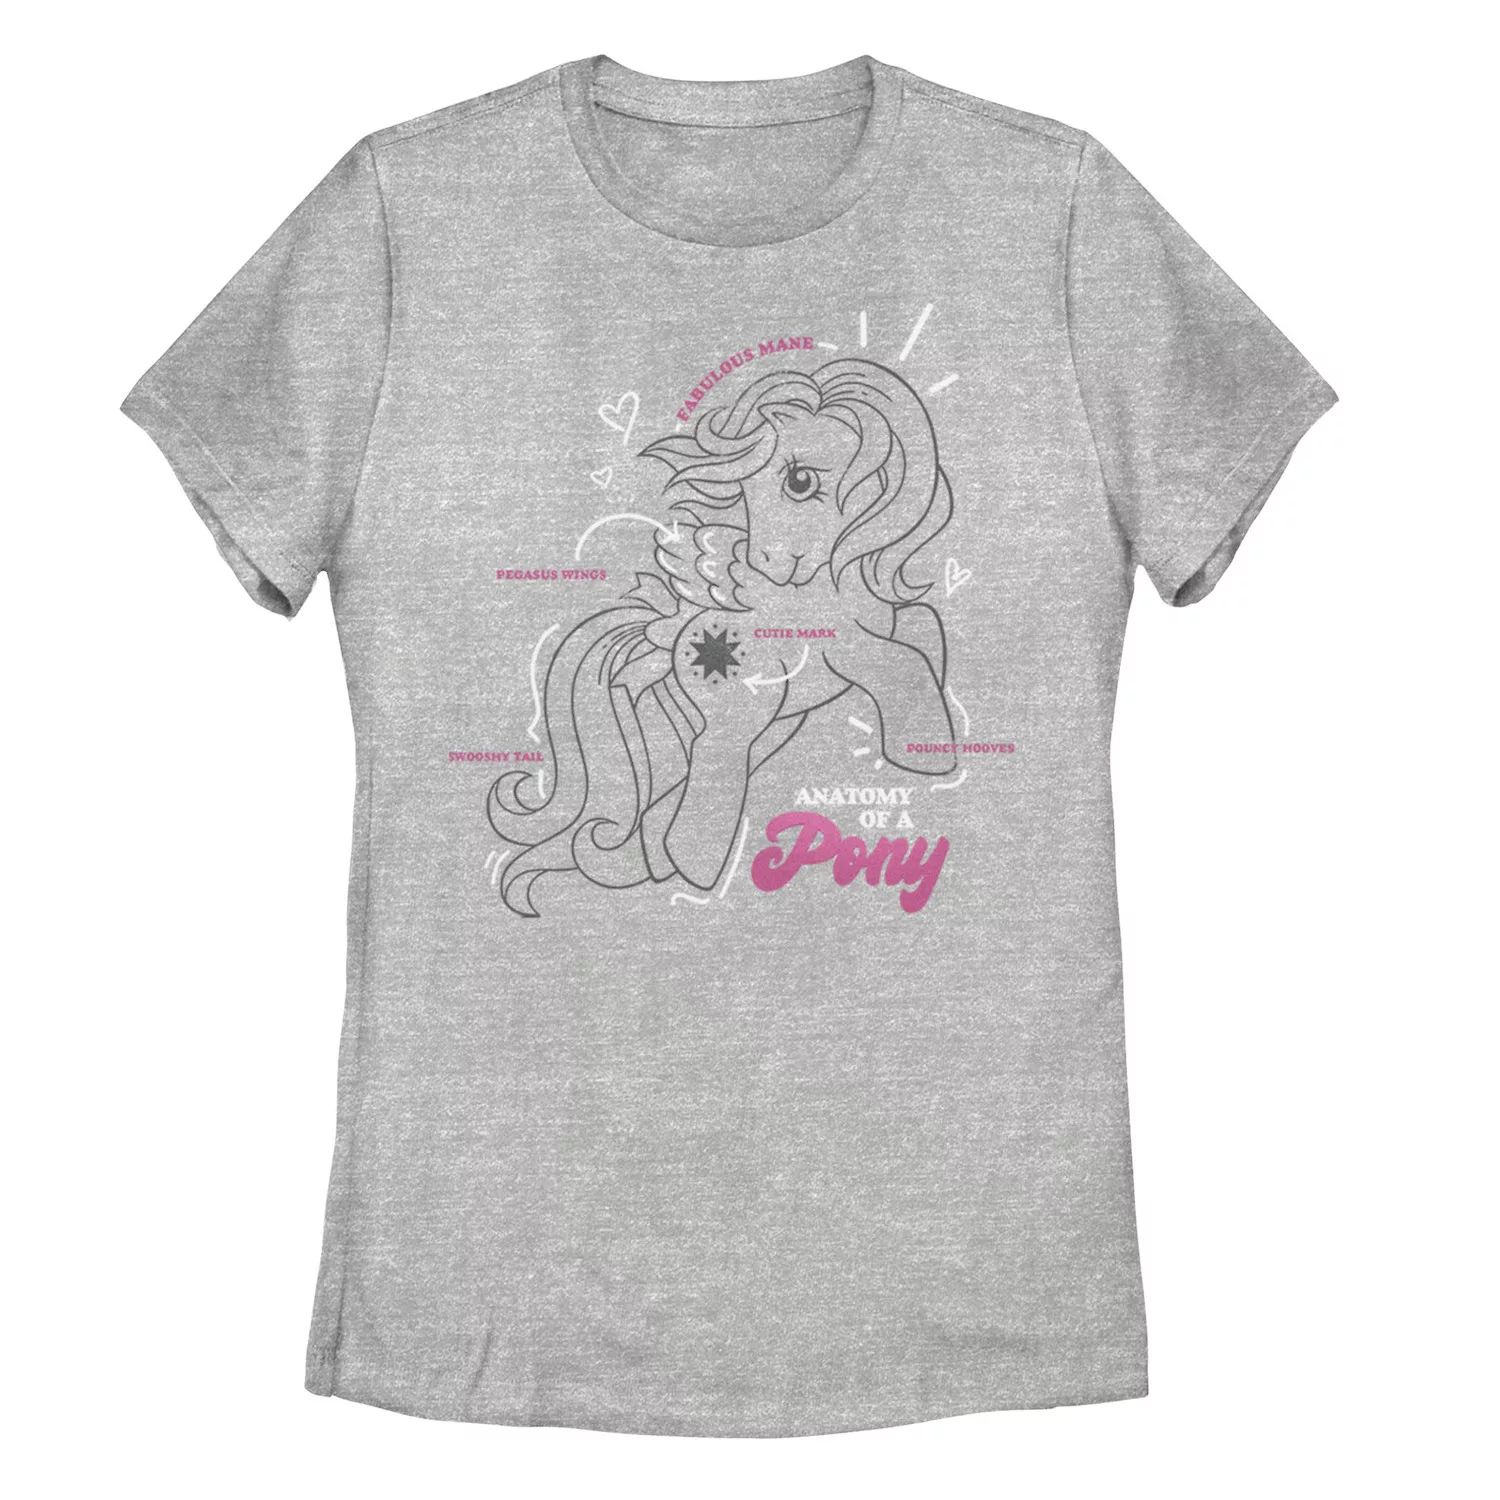 Анатомия футболки с рисунком пони My Little Pony для юниоров My Little Pony термокружка my little pony новое поколение розовая 330 мл фарфор